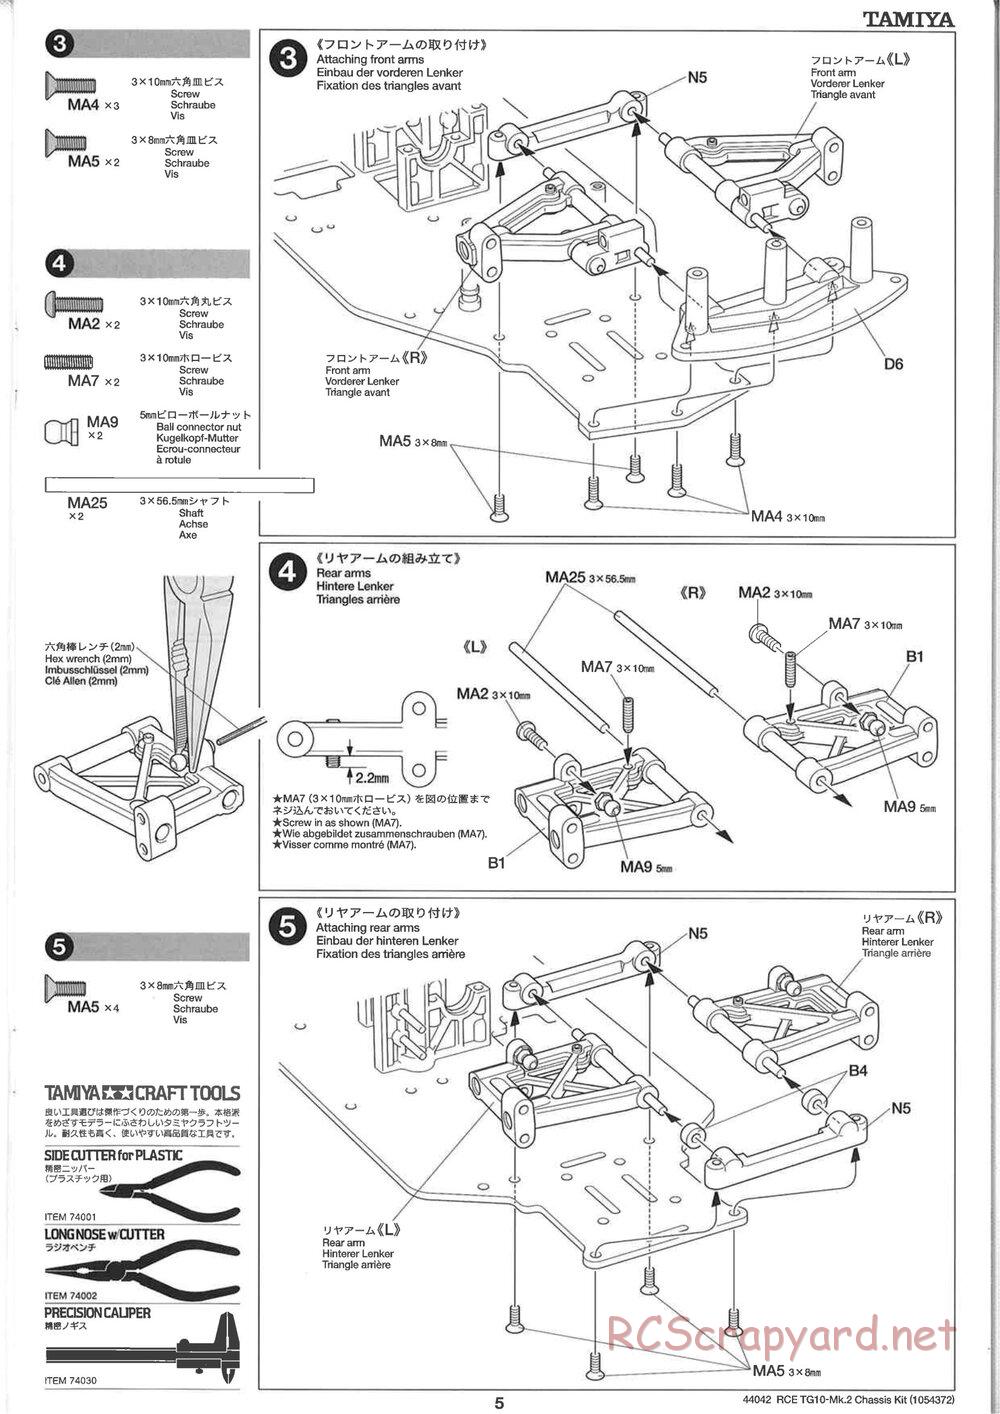 Tamiya - TG10 Mk.2 Chassis - Manual - Page 5